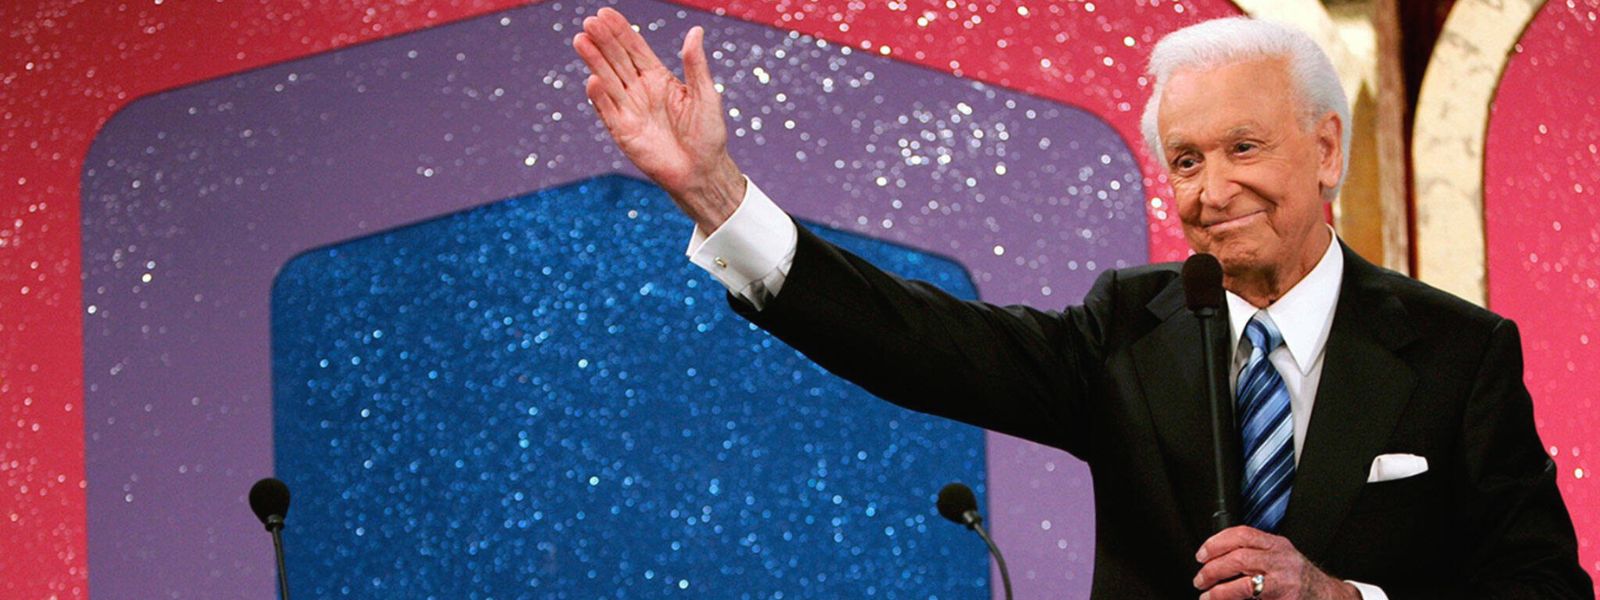 Famed U.S. game show host Bob Barker dies at 99